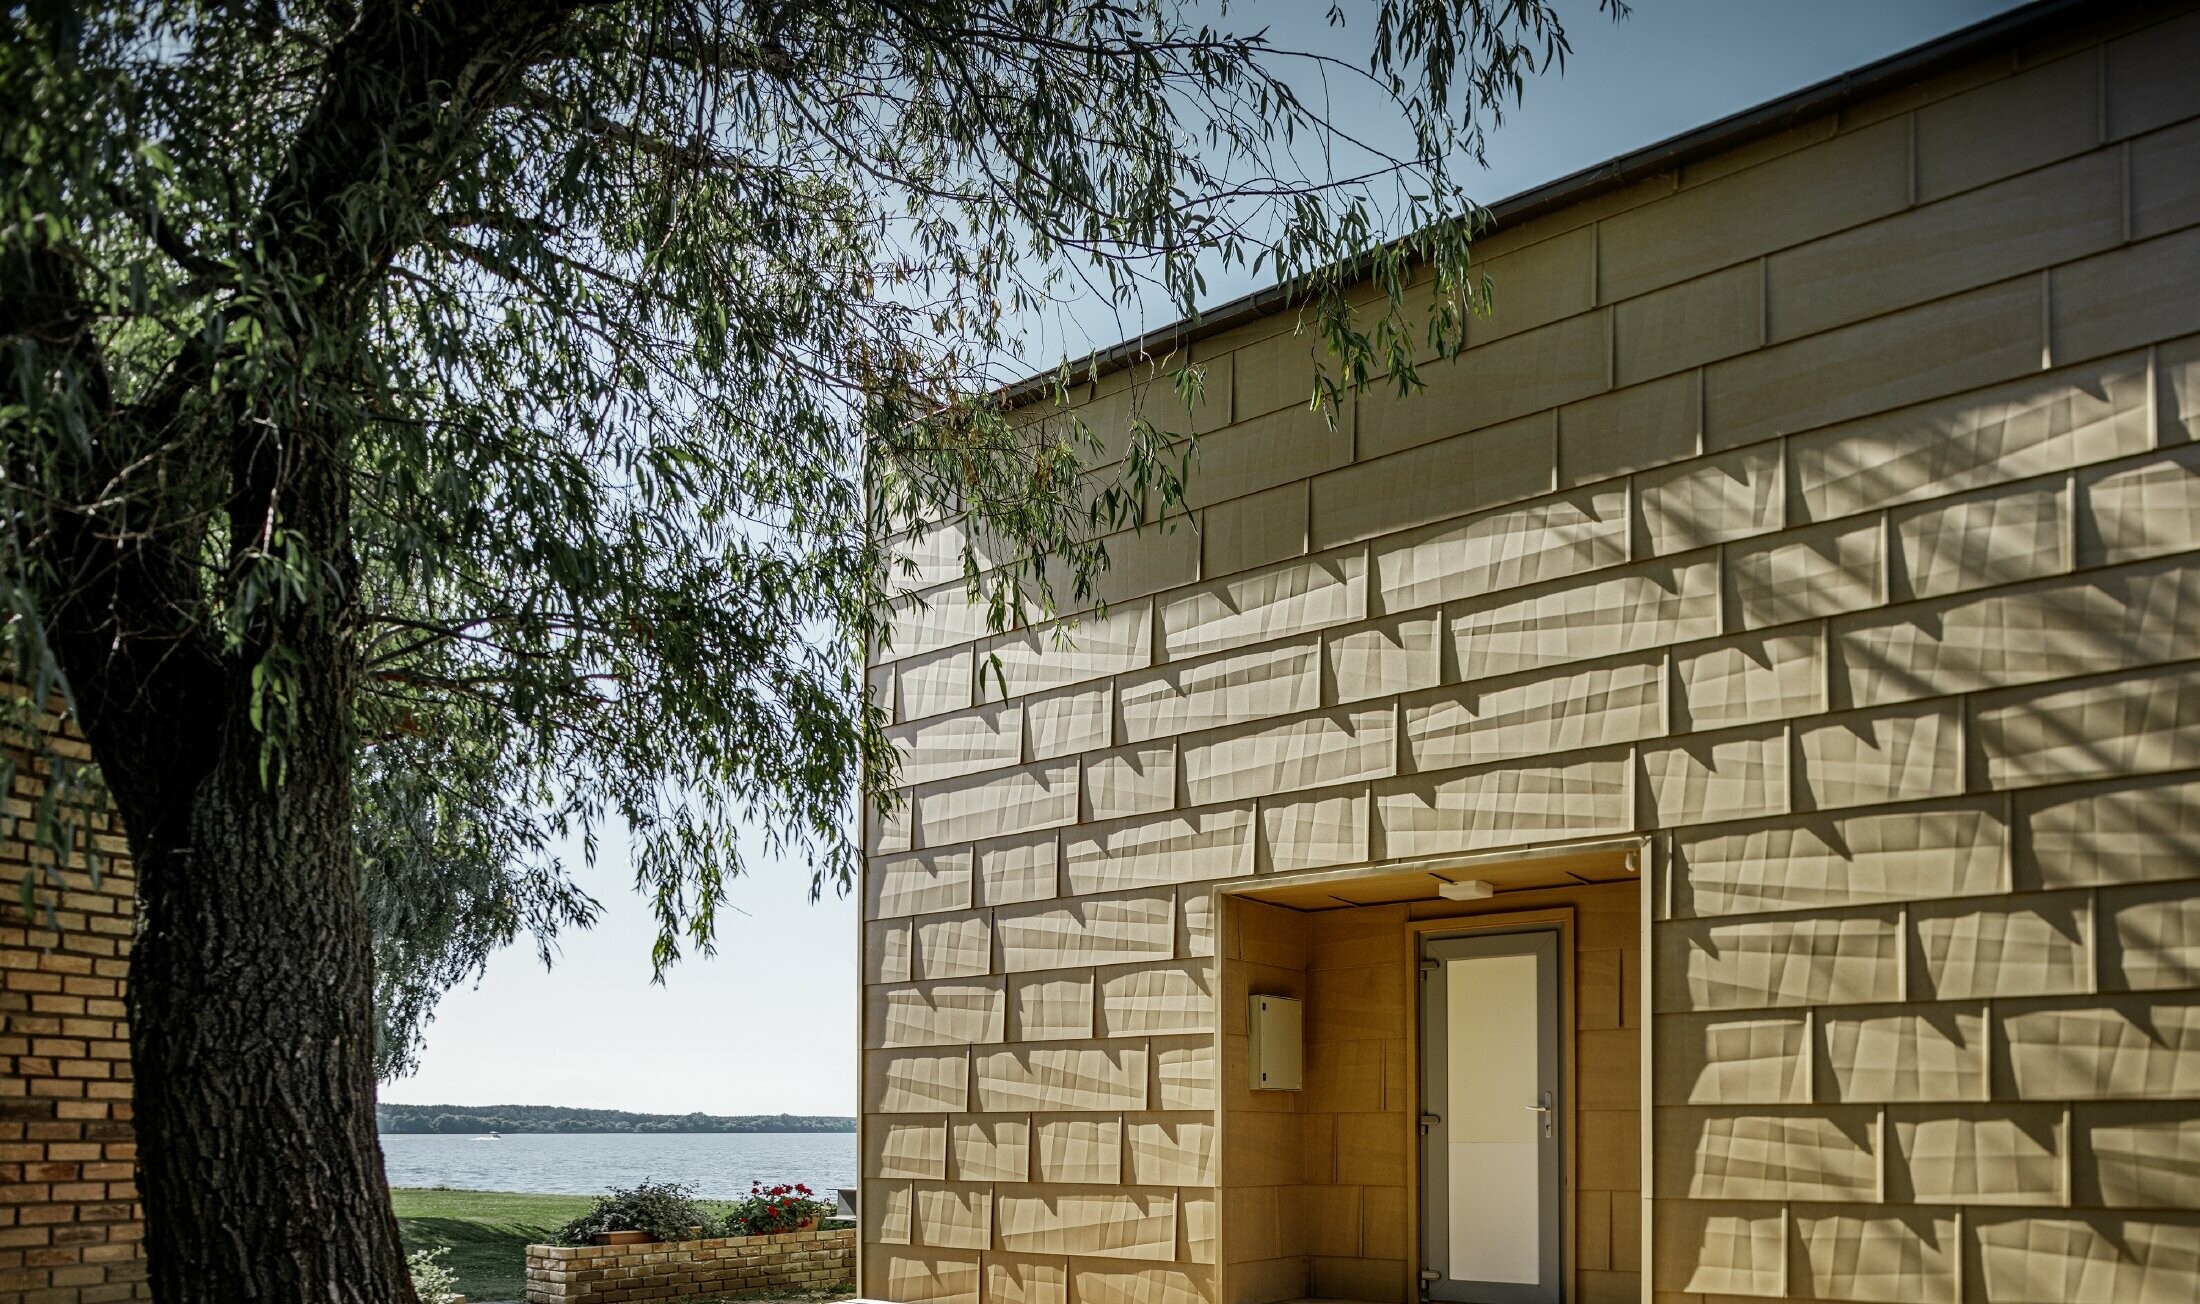 Seconda casa moderna con copertura piana e ampie facciata finestrate al lago con una facciata spigolosa in alluminio in marrone sahara 